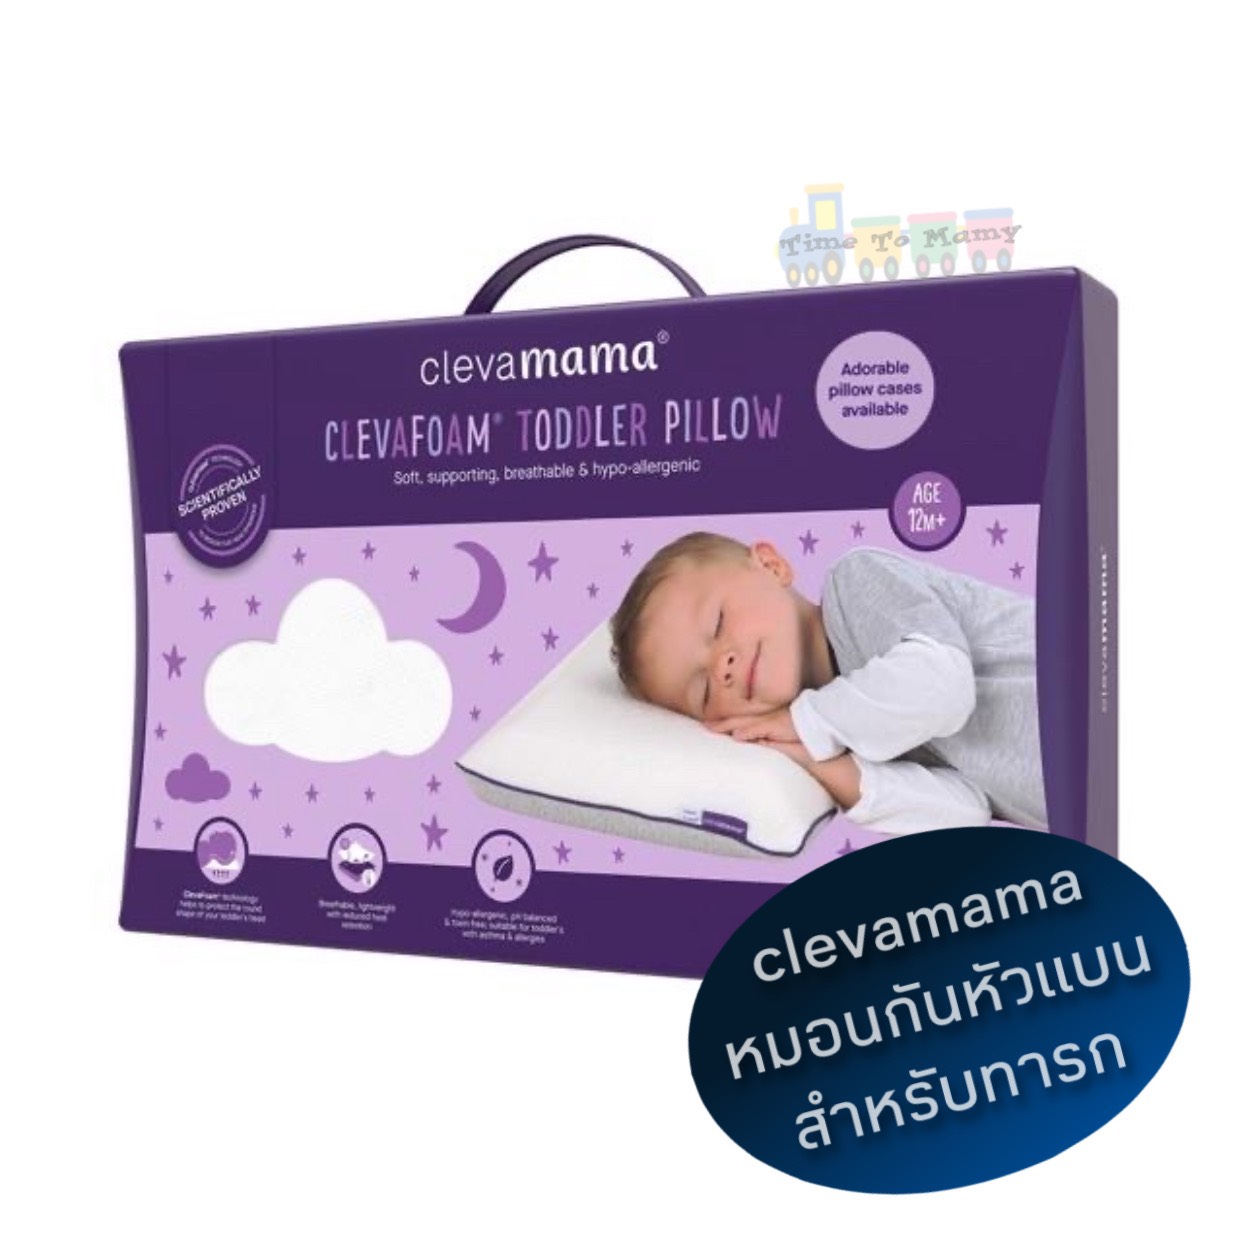 แนะนำ Clevamama หมอนหัวทุย หมอนกันหัวแบน หมอนเด็กทารก รุ่นToddler Pillow(12เดือน++)ขนาด50x30x5.5cm. หมอนนิ่มมากลูกหลับยาวสบาย [ของแท้100%]